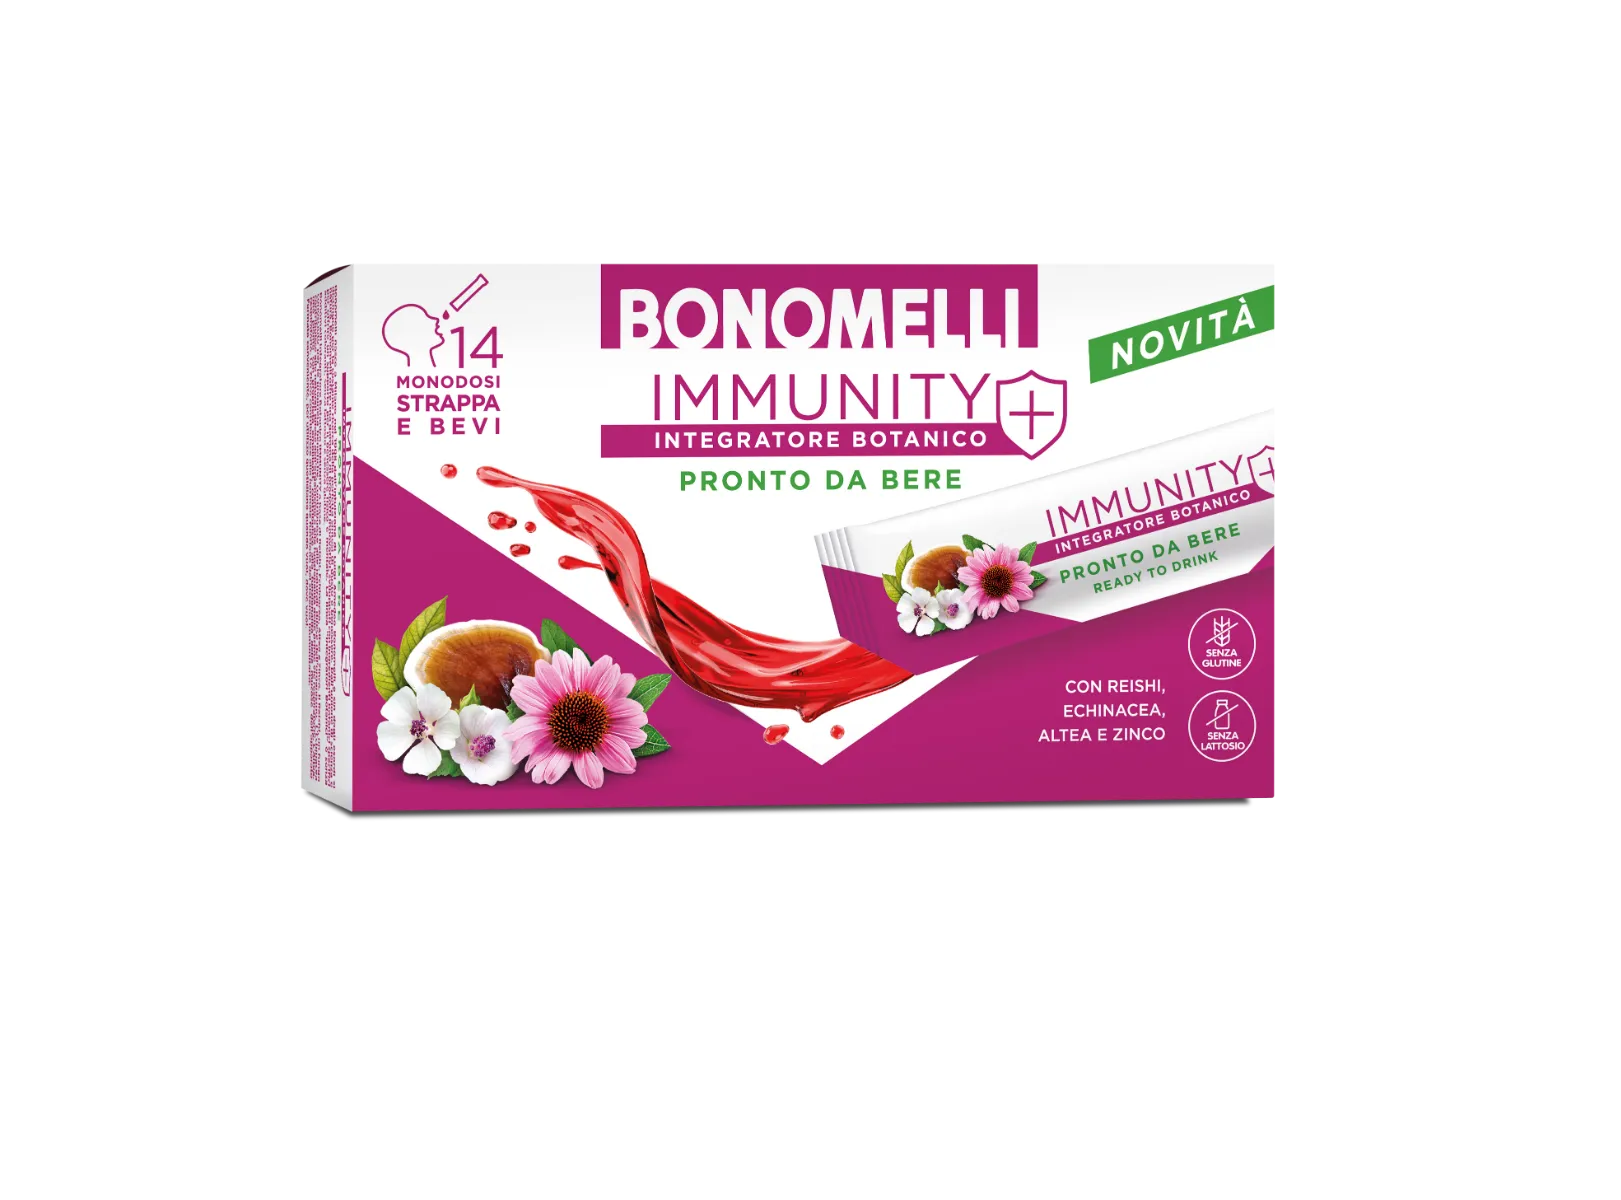 Integratore Botanico Bonomelli Immunity - 14 Stick  - Con Buono Sconto Da 1€